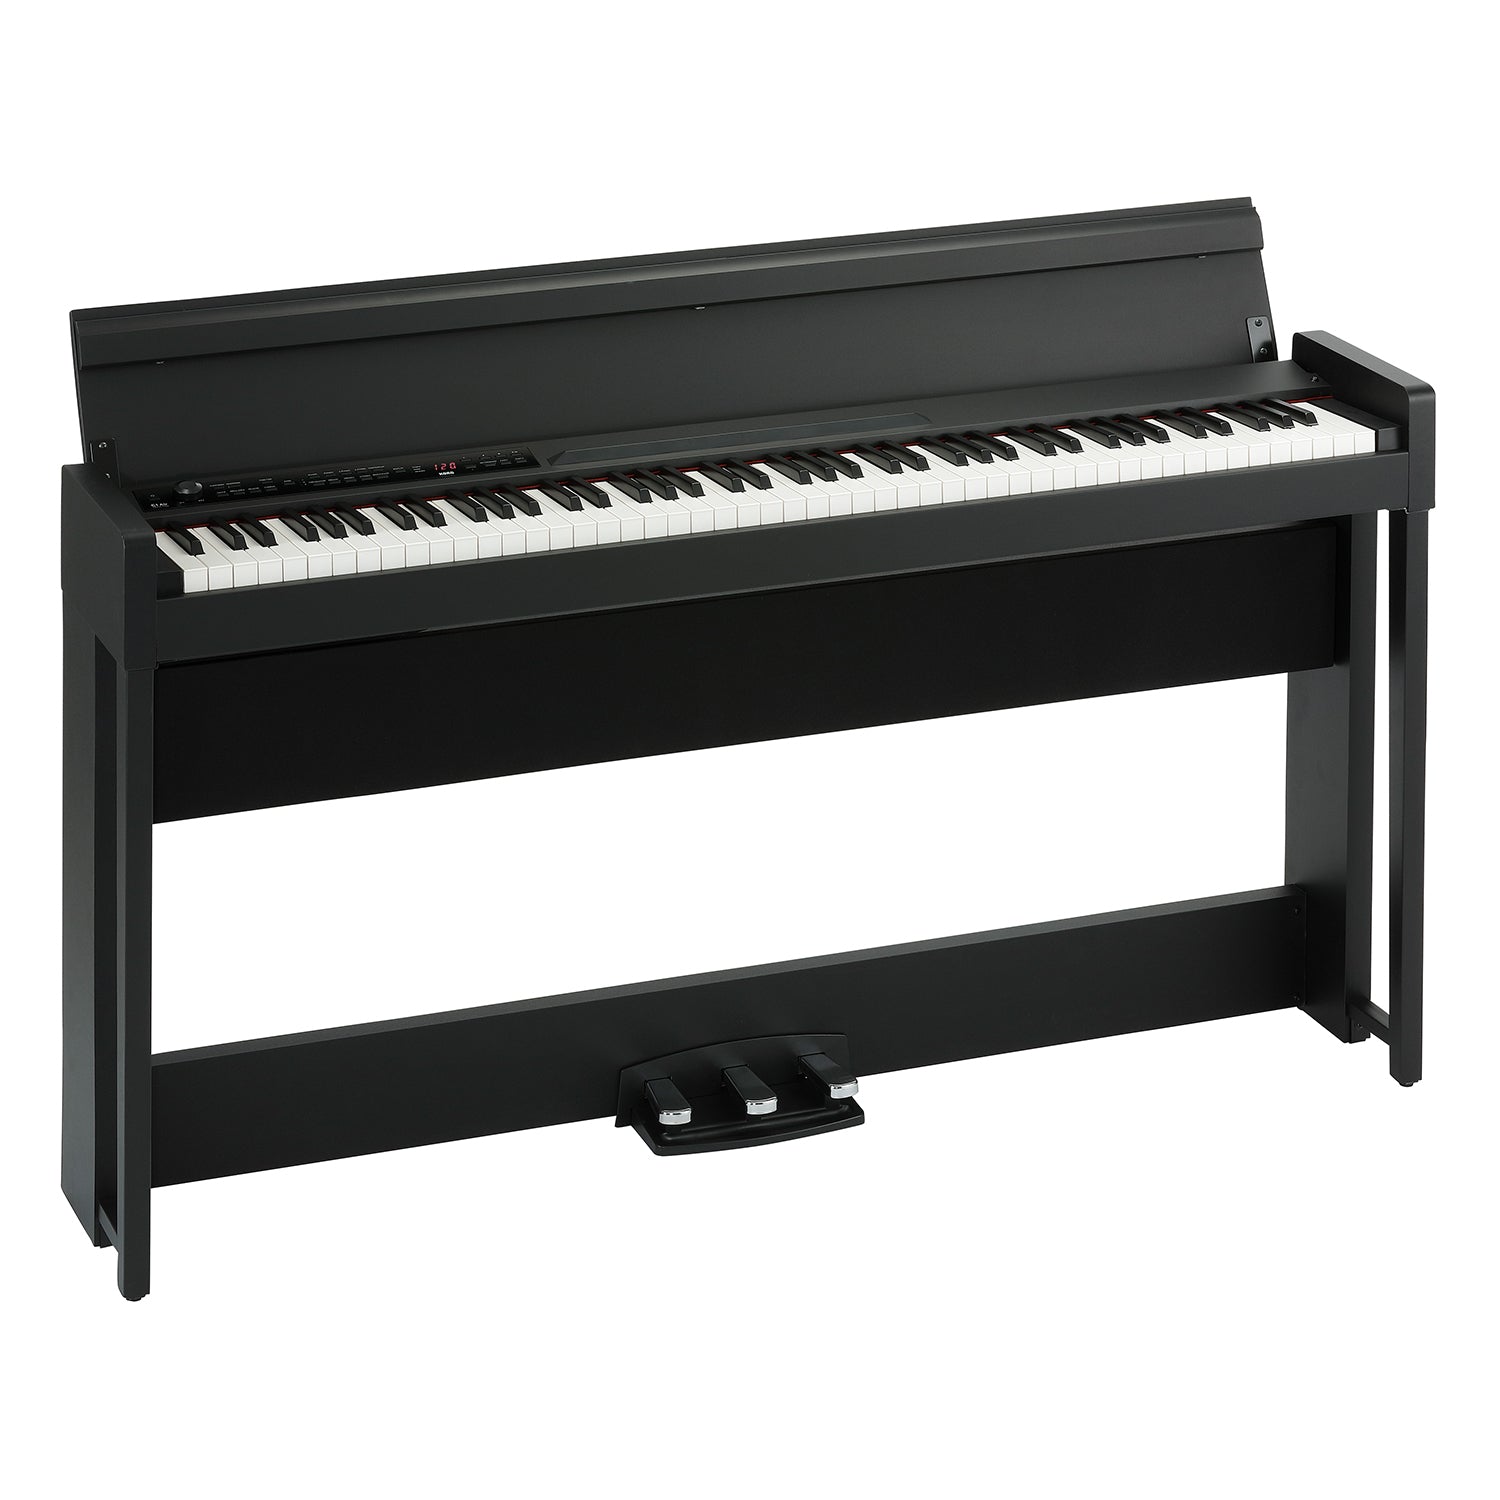 C1 Air Digital Piano - Black KORG USA Official Store